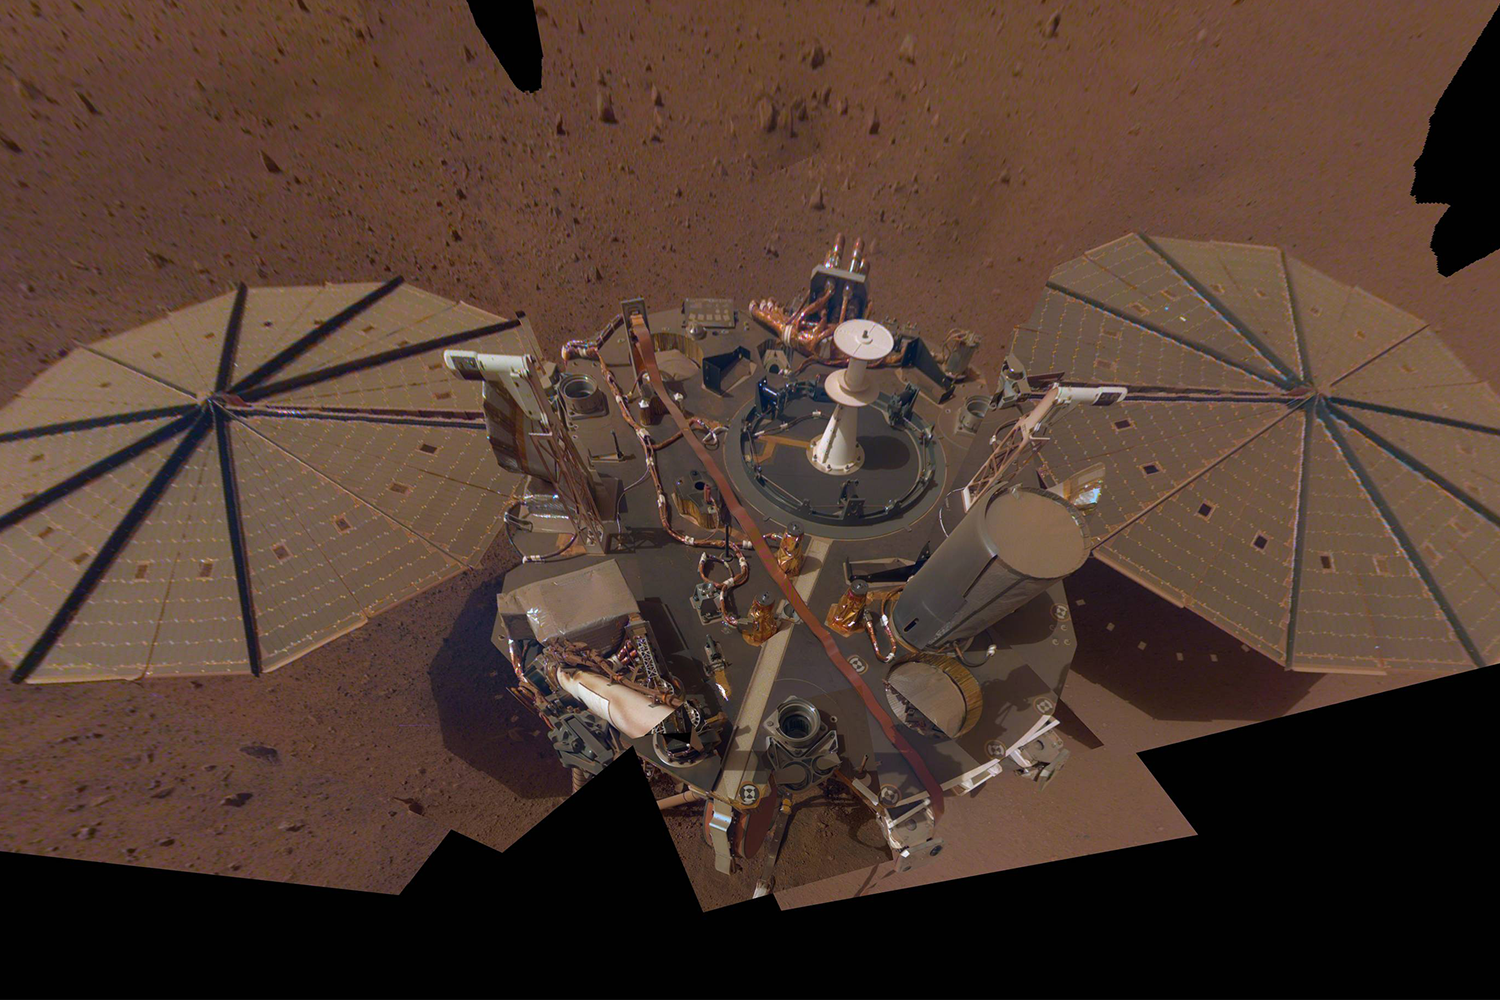 NASA InSight Lander on the surface of Mars